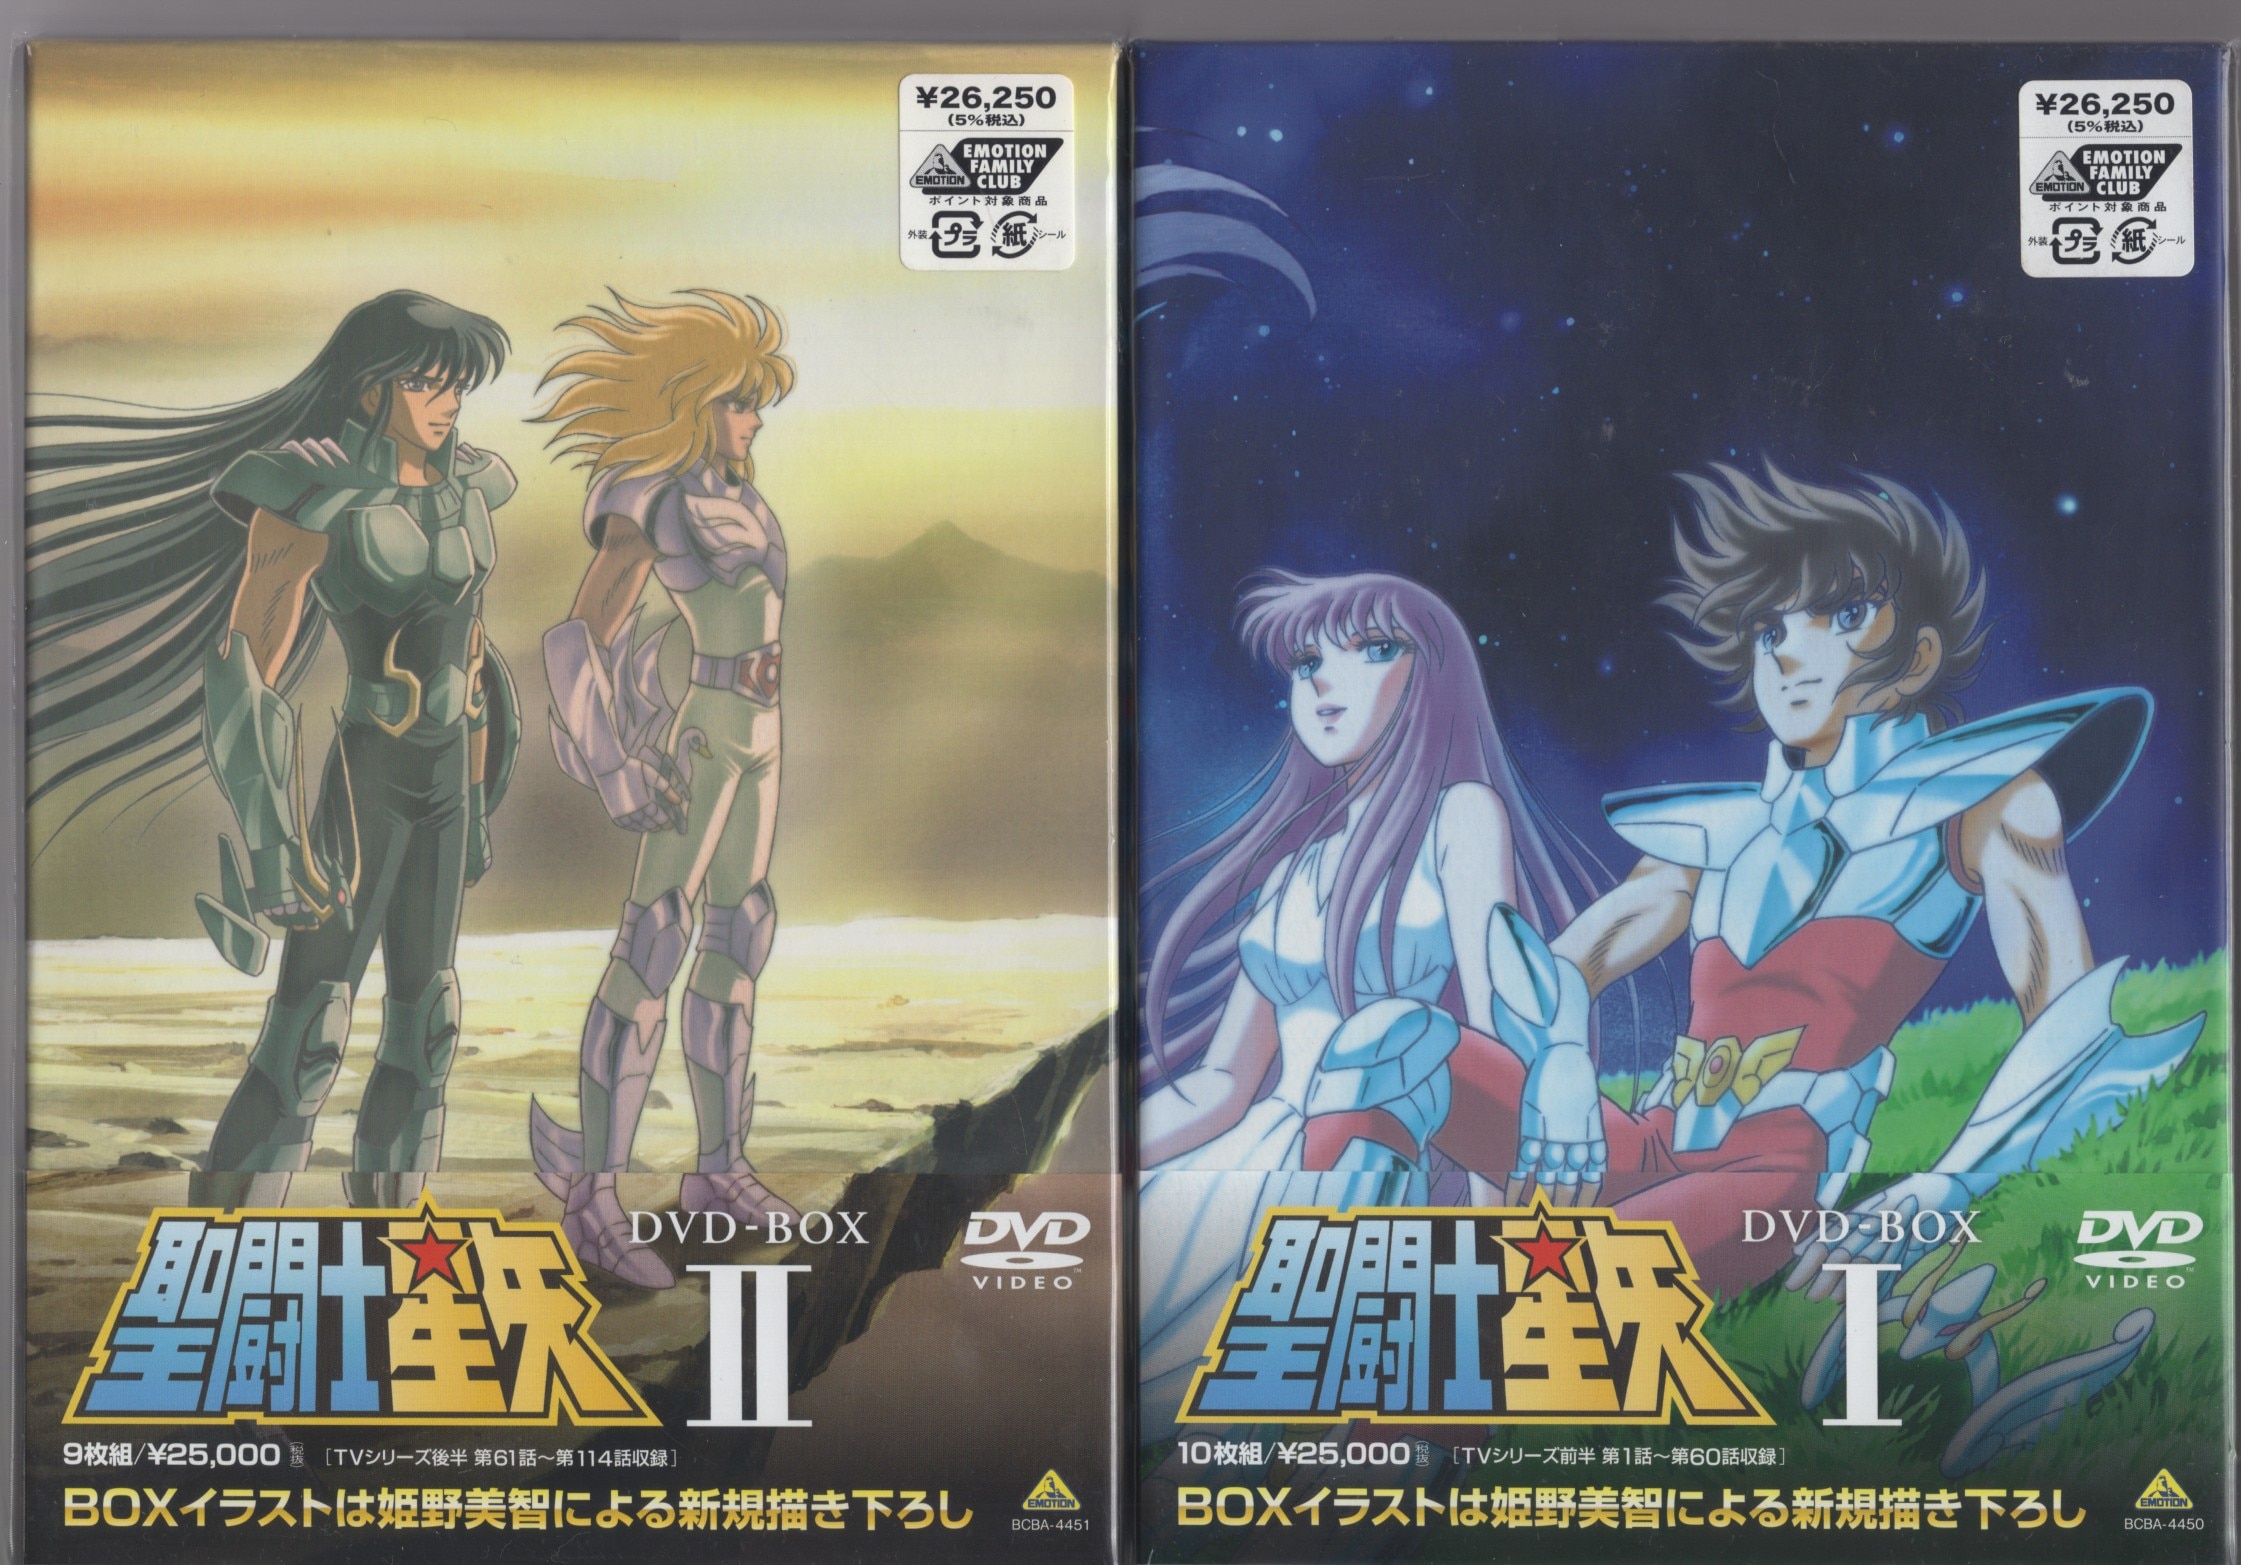 聖闘士星矢 DVD-BOX II - アニメーション